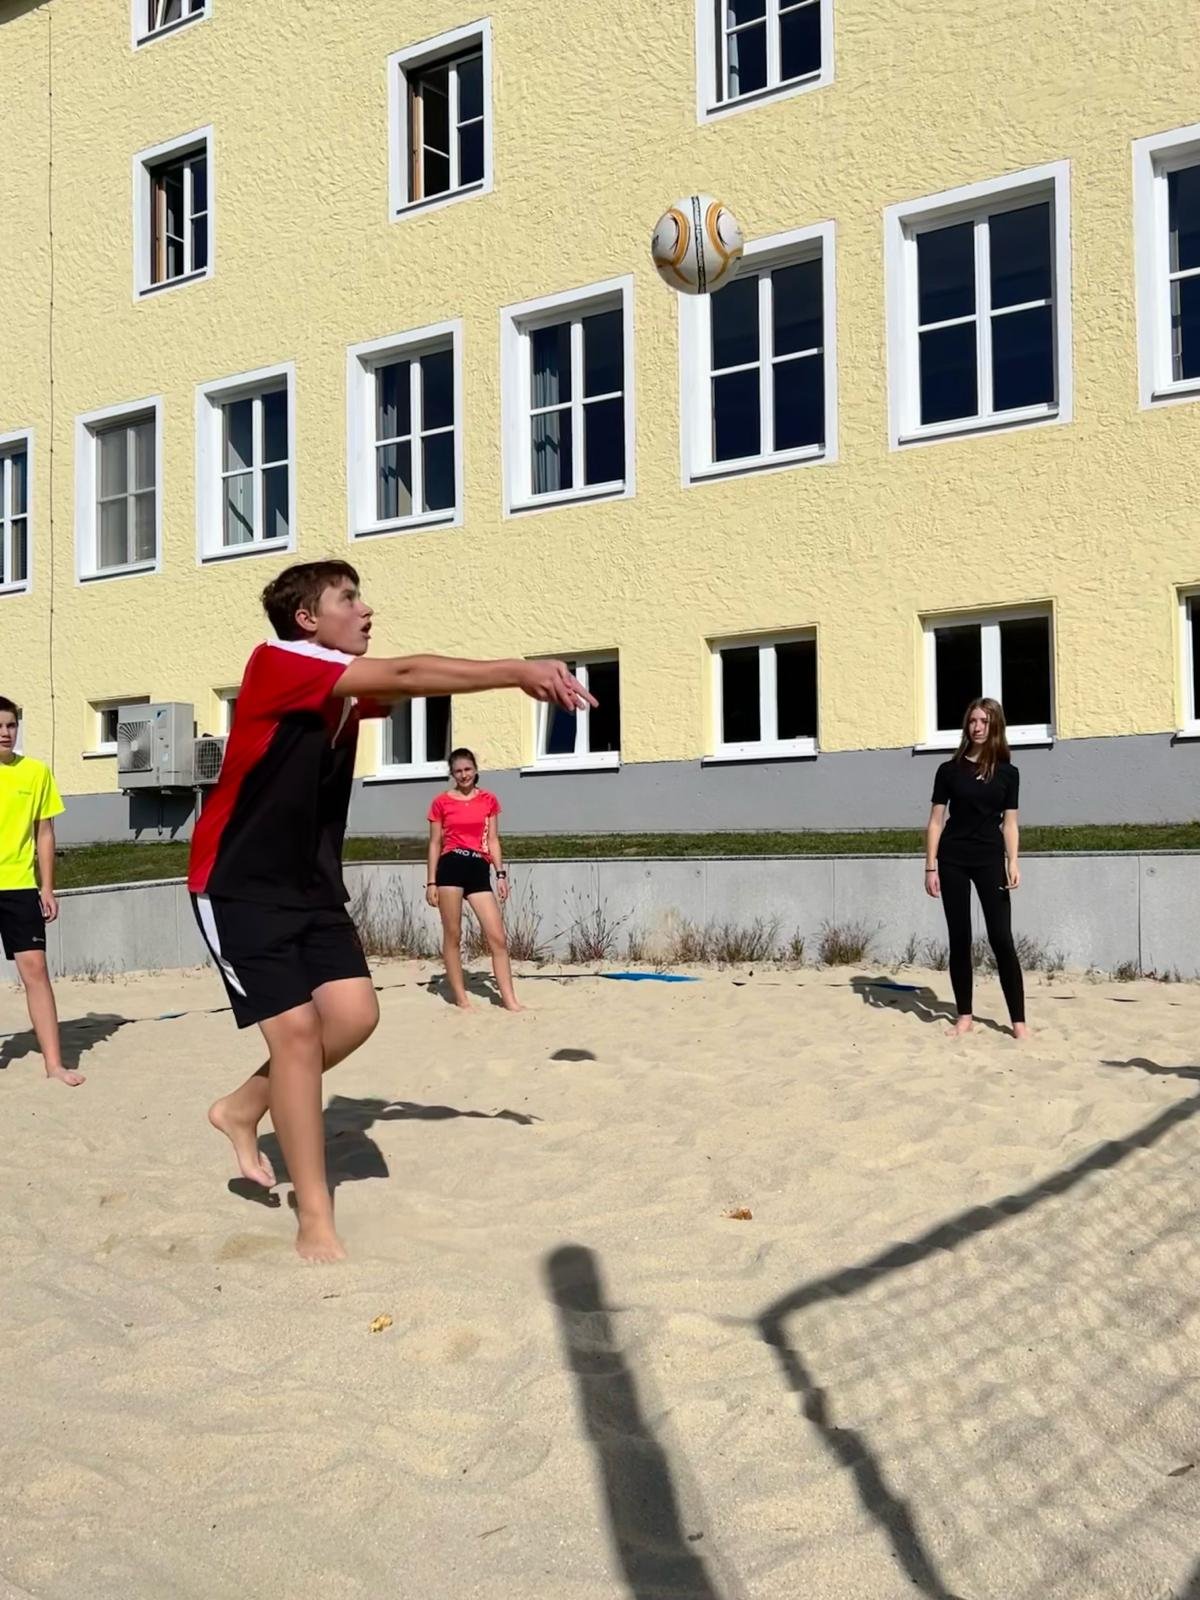 Schüler schießt den Ball über das Volleyballnetz, am Beachvolleyballplatz.